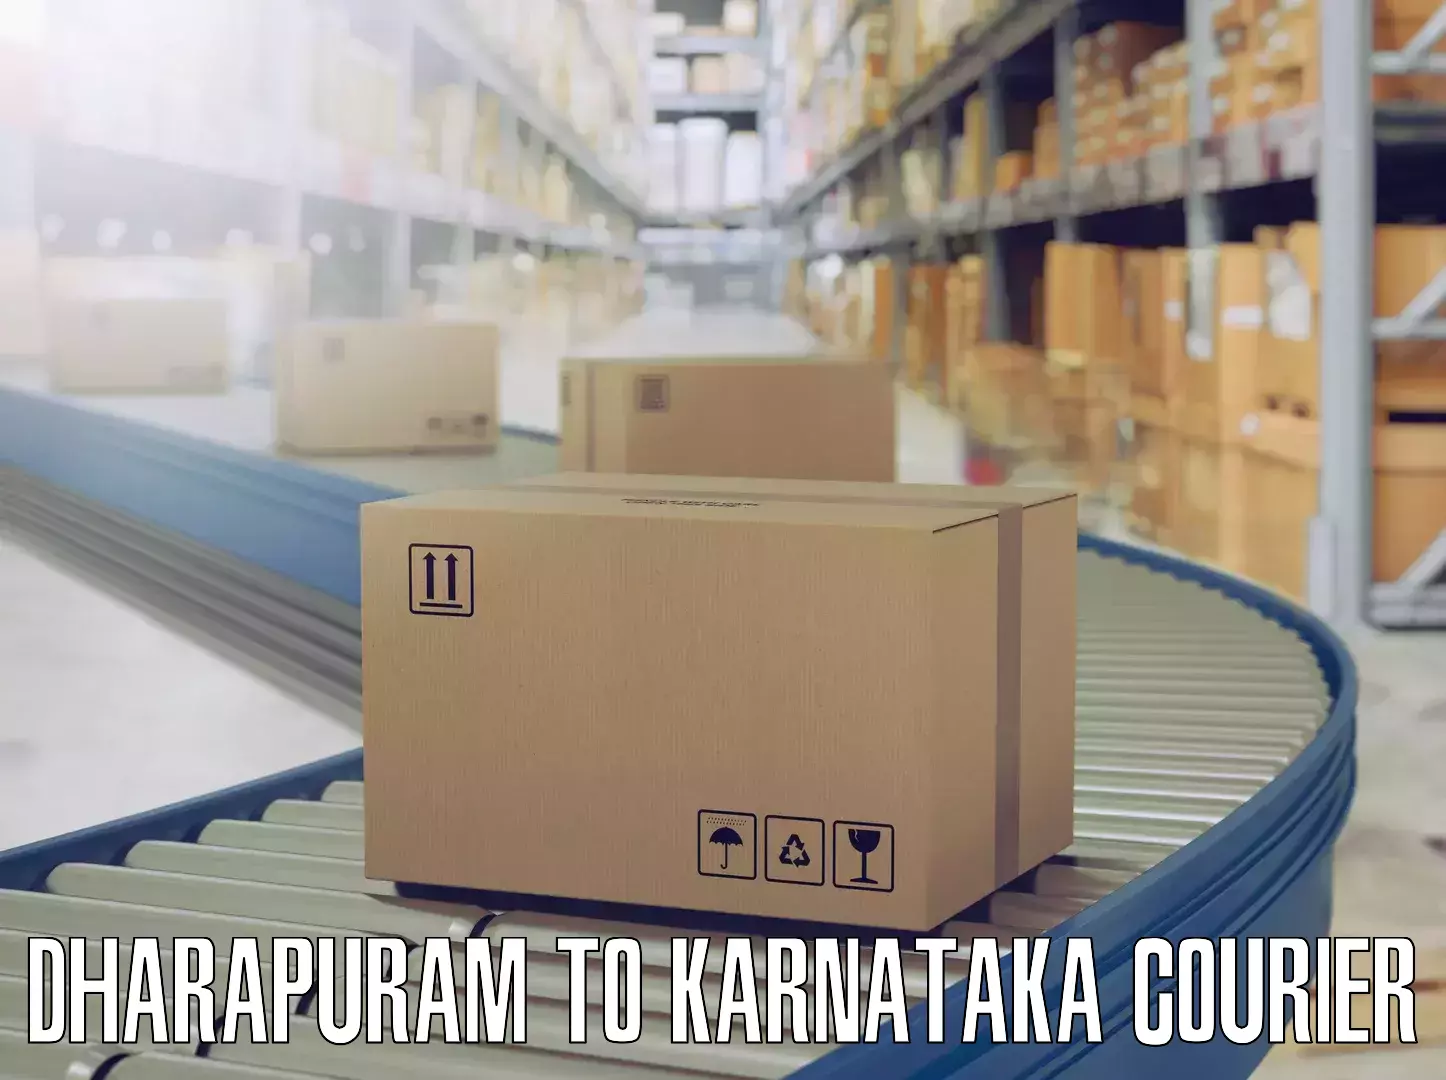 Furniture transport experts Dharapuram to Karnataka